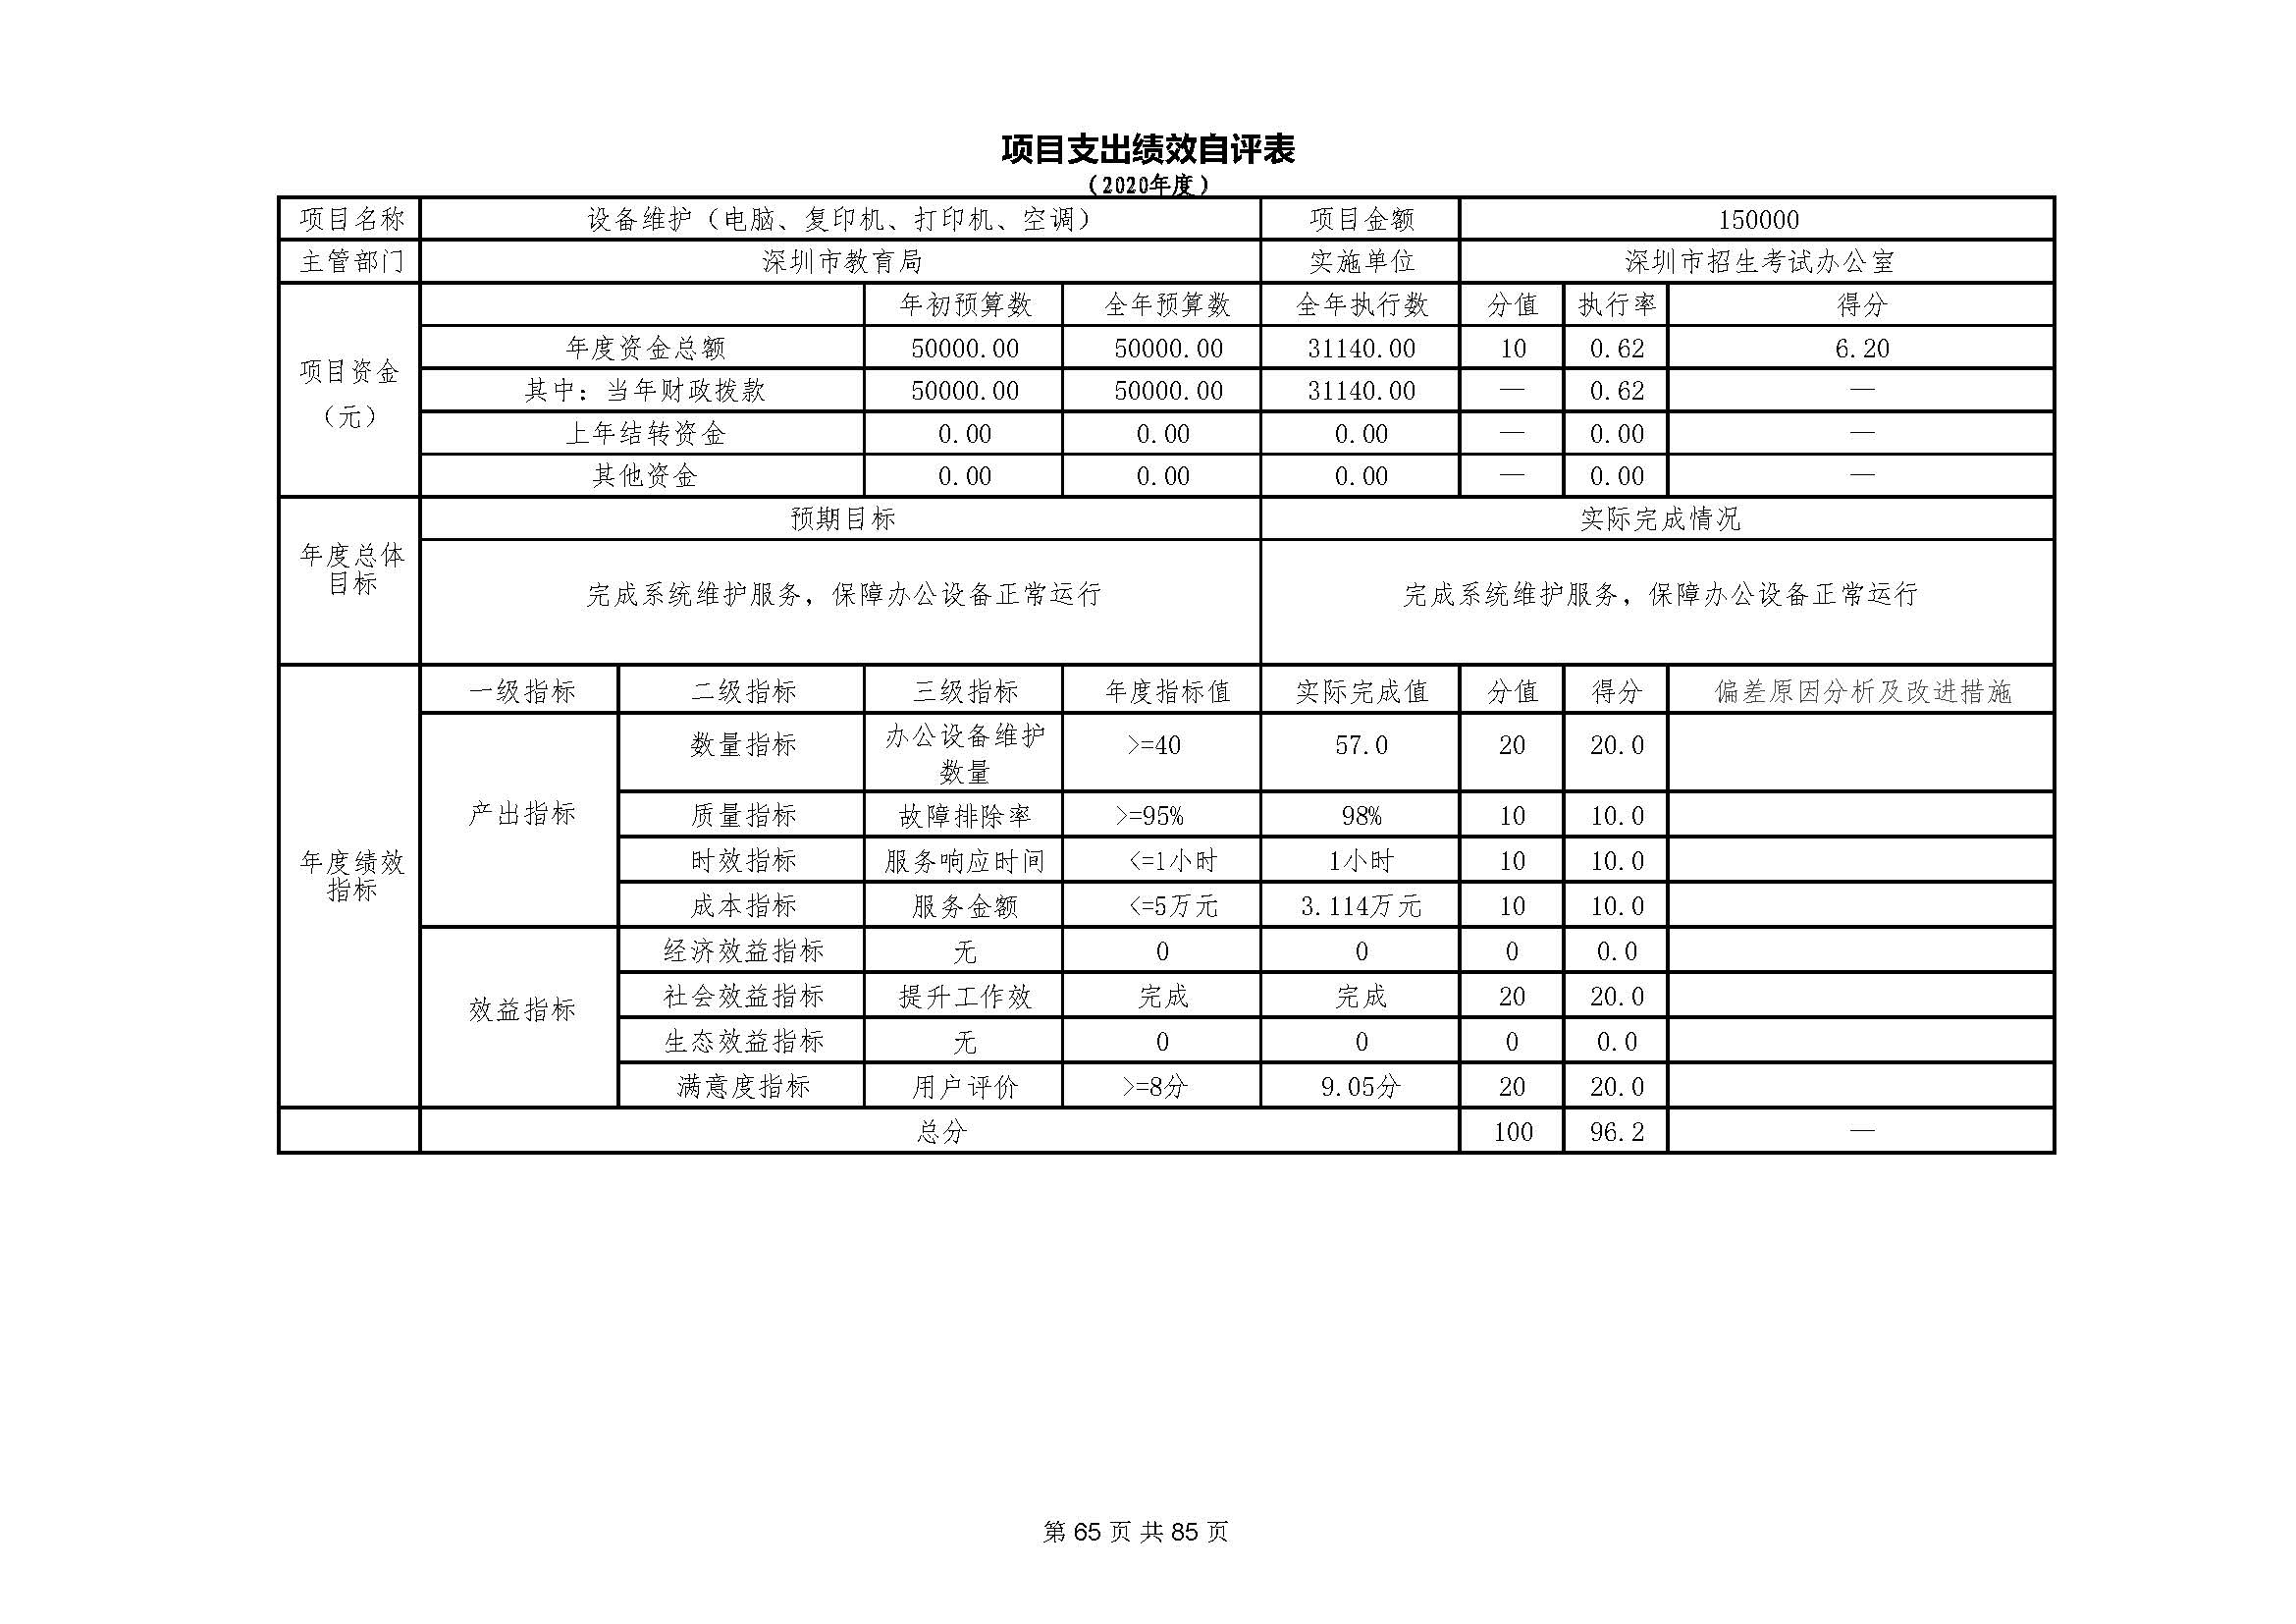 深圳市招生考试办公室2020年度部门决算_页面_66.jpg